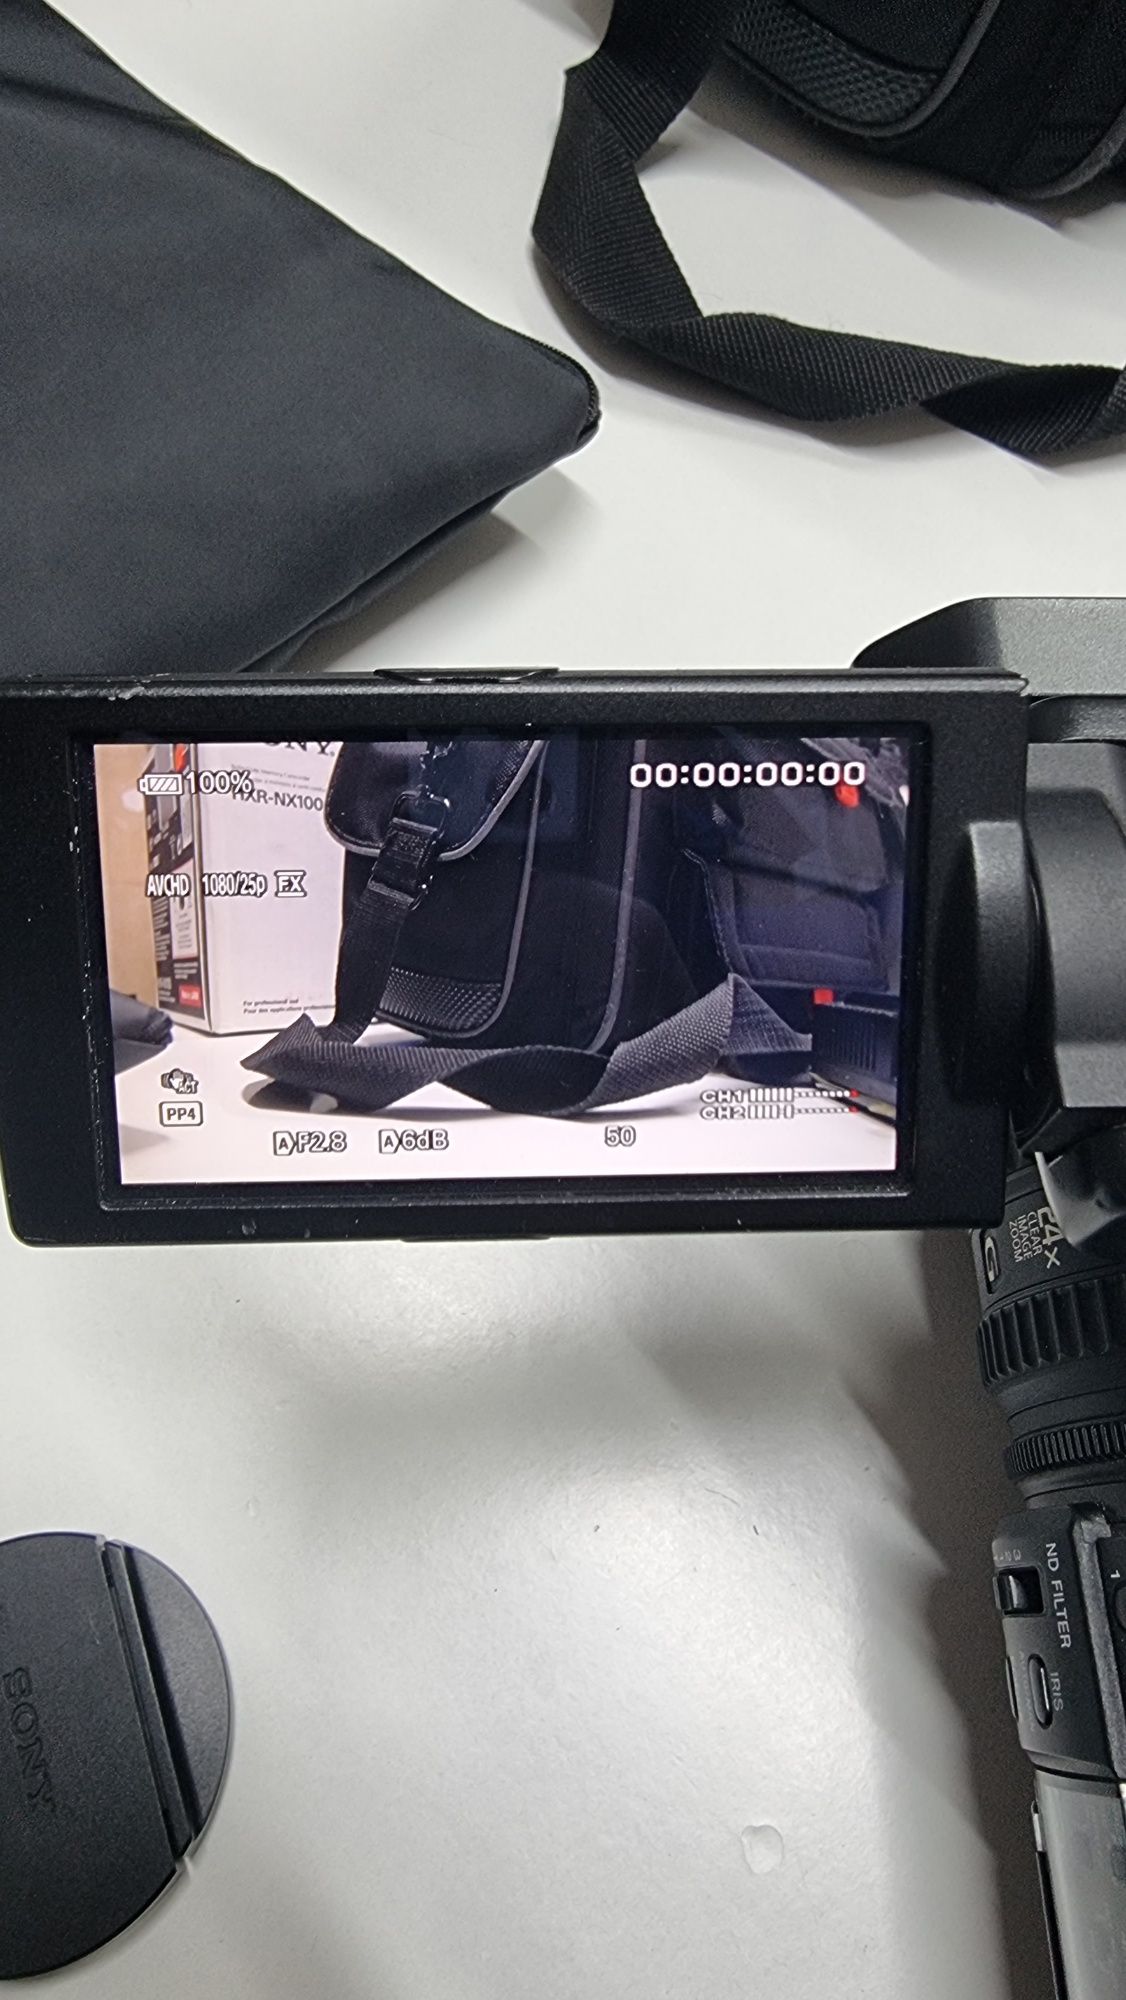 Camera video profesionala sony nx100